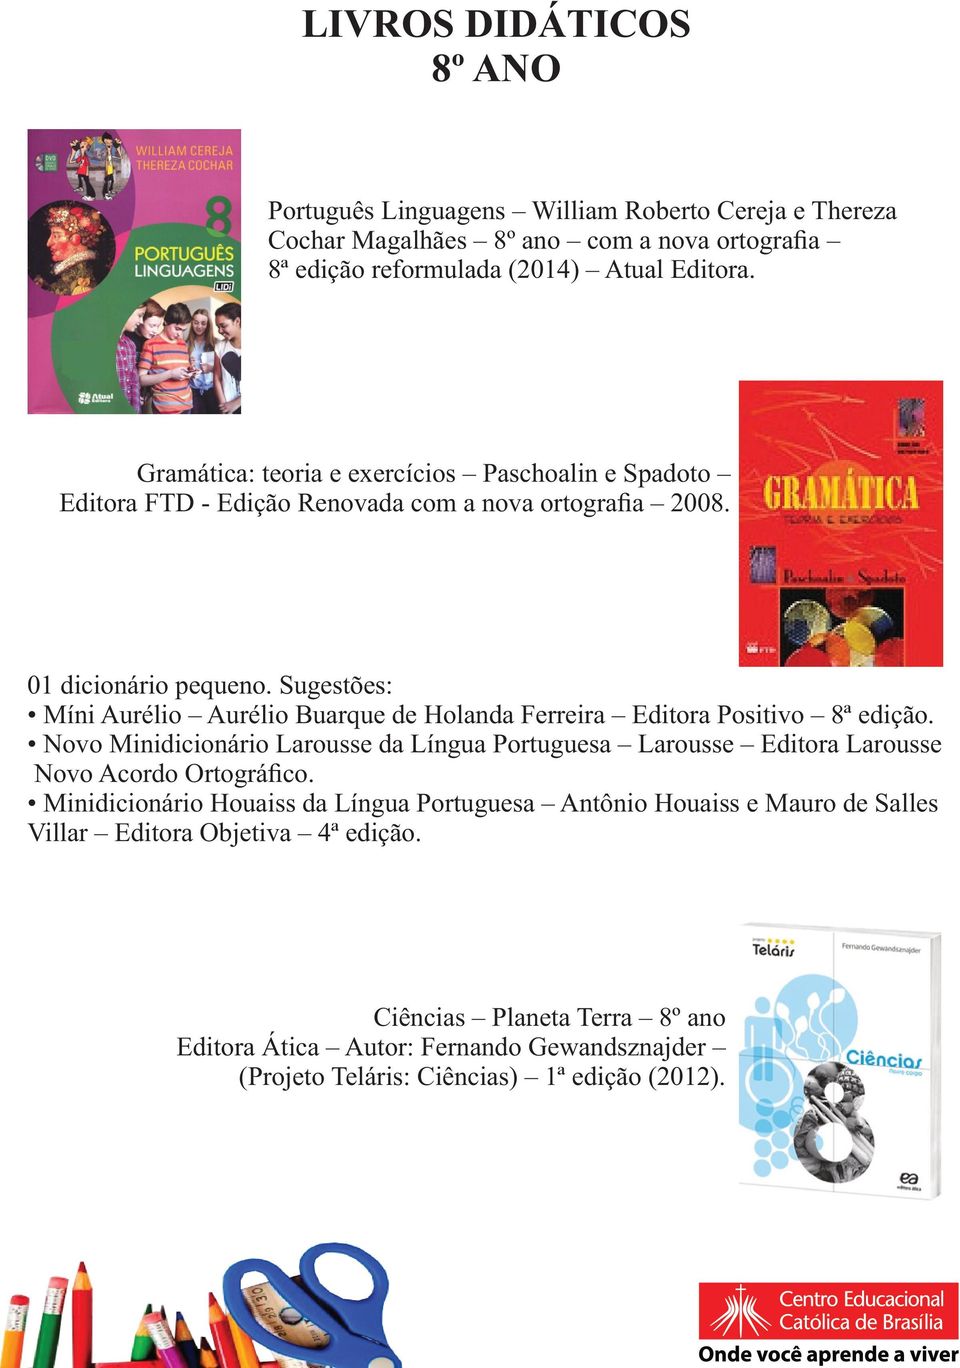 Sugestões: Míni Aurélio Aurélio Buarque de Holanda Ferreira Editora Positivo 8ª edição.